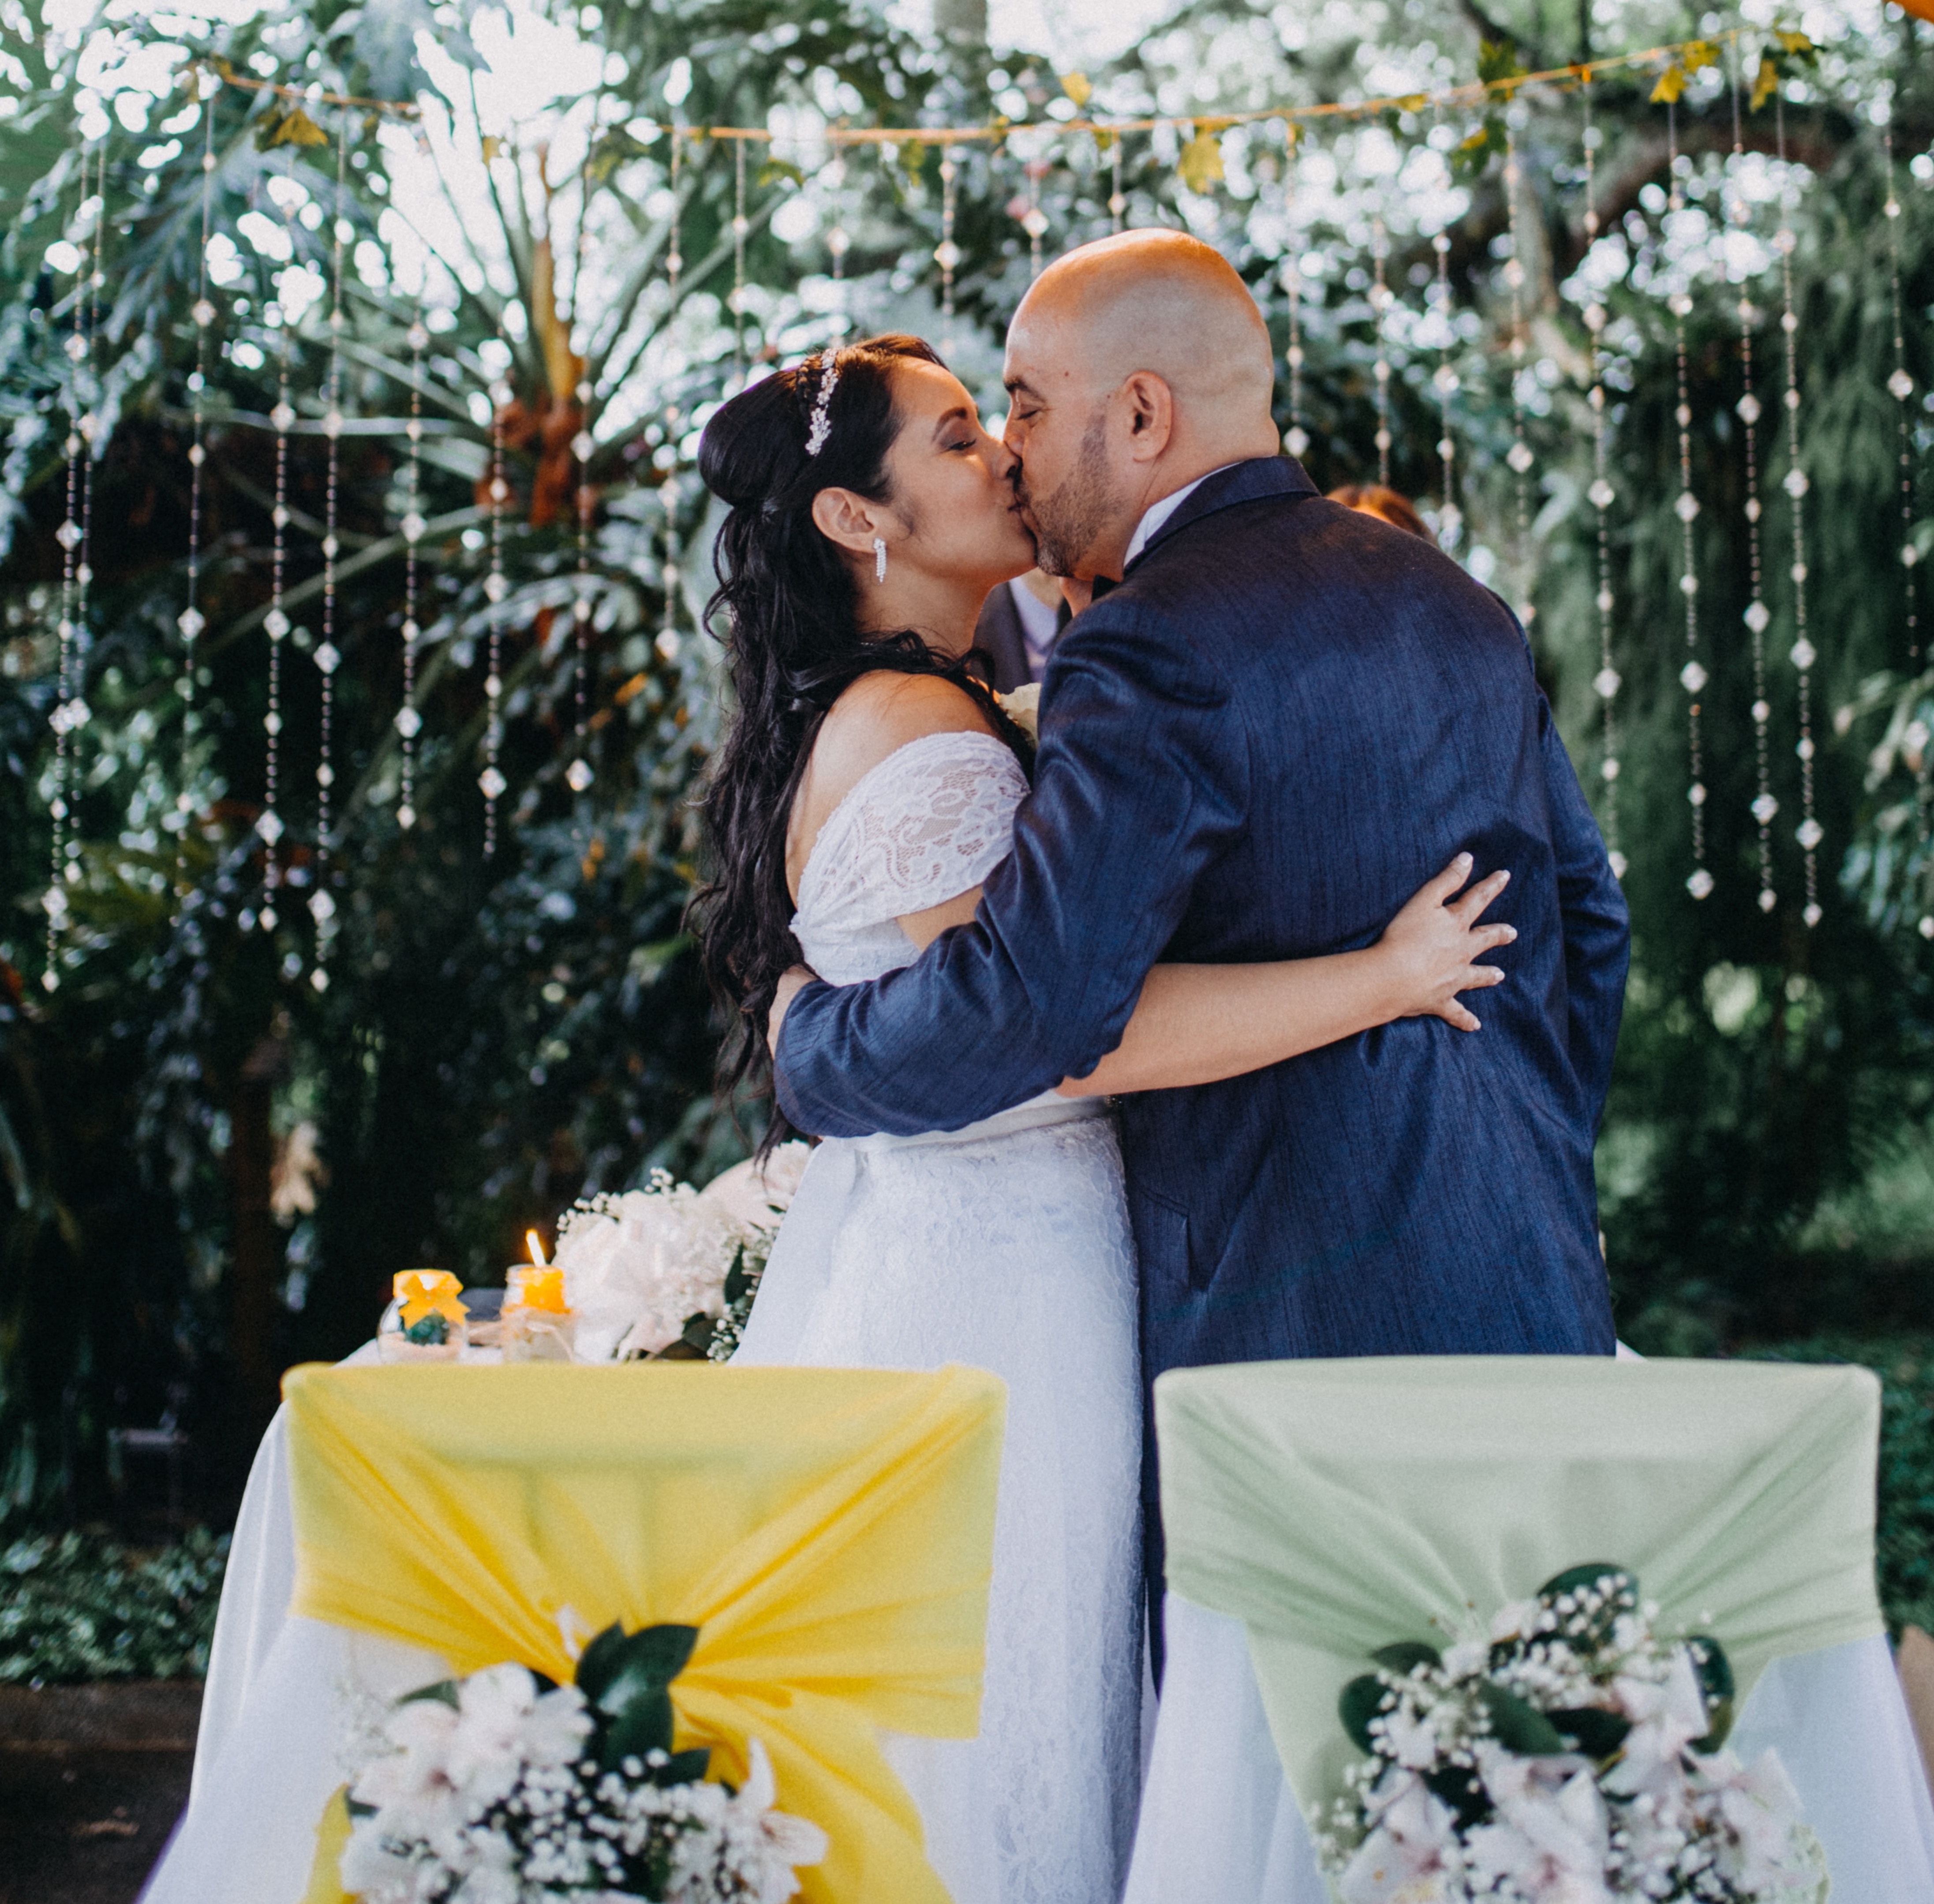 traditioner er der til et bryllup? – Weddingtales